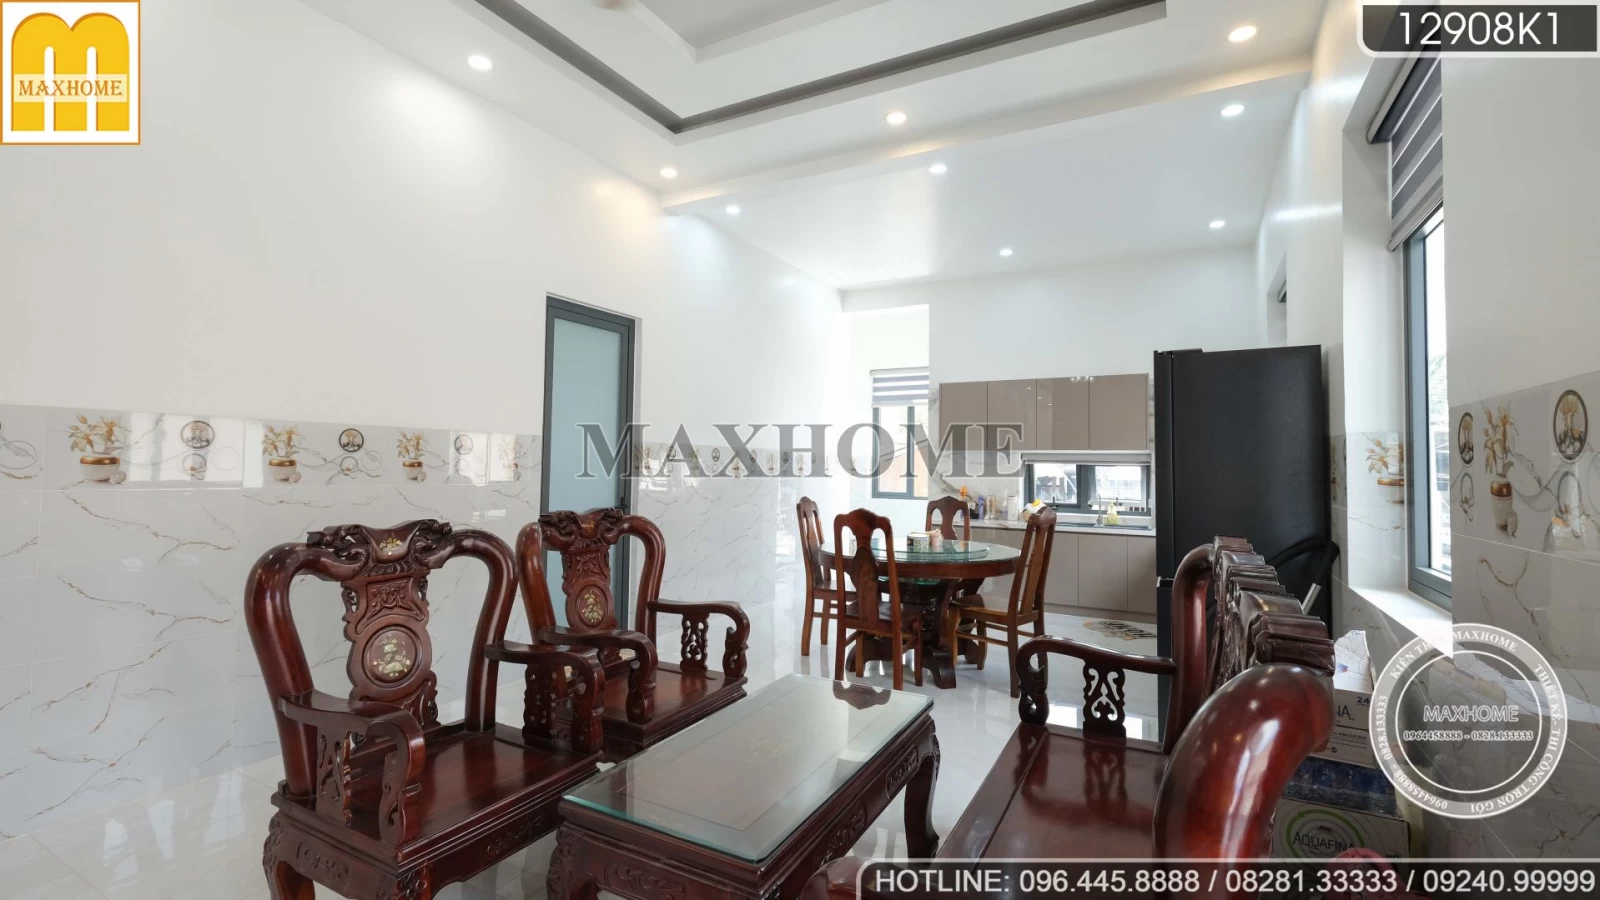 Thực tế nội thất hiện đại đẹp tinh tế Maxhome thi công cho nhà mái Thái | MH02368